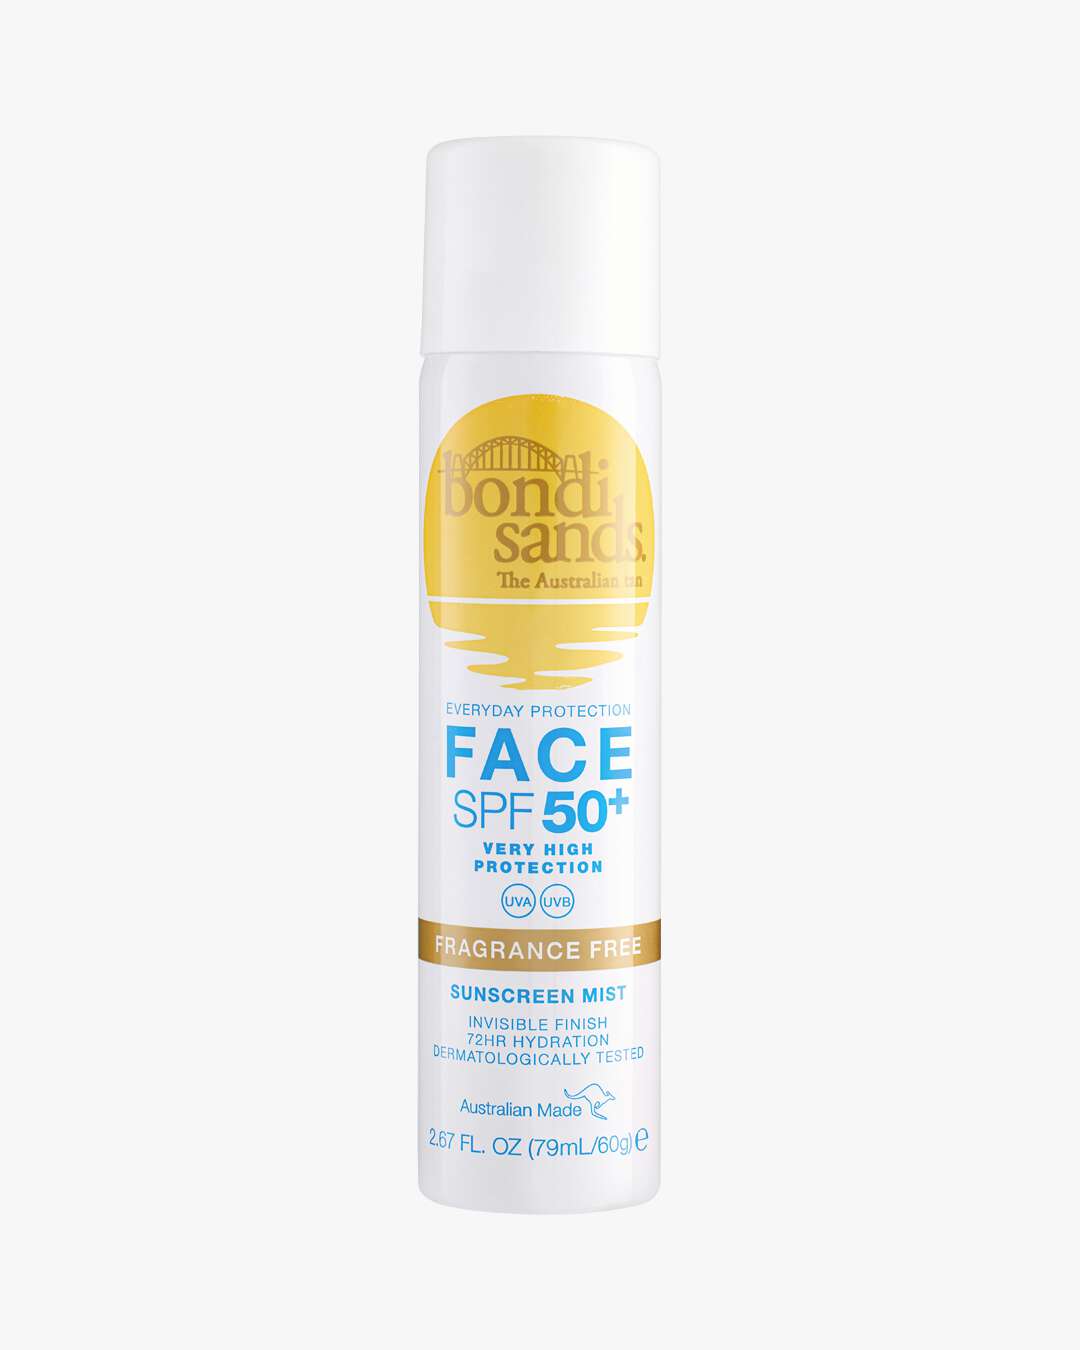 Fragrance Free Face Mist SPF 50+ 60 g